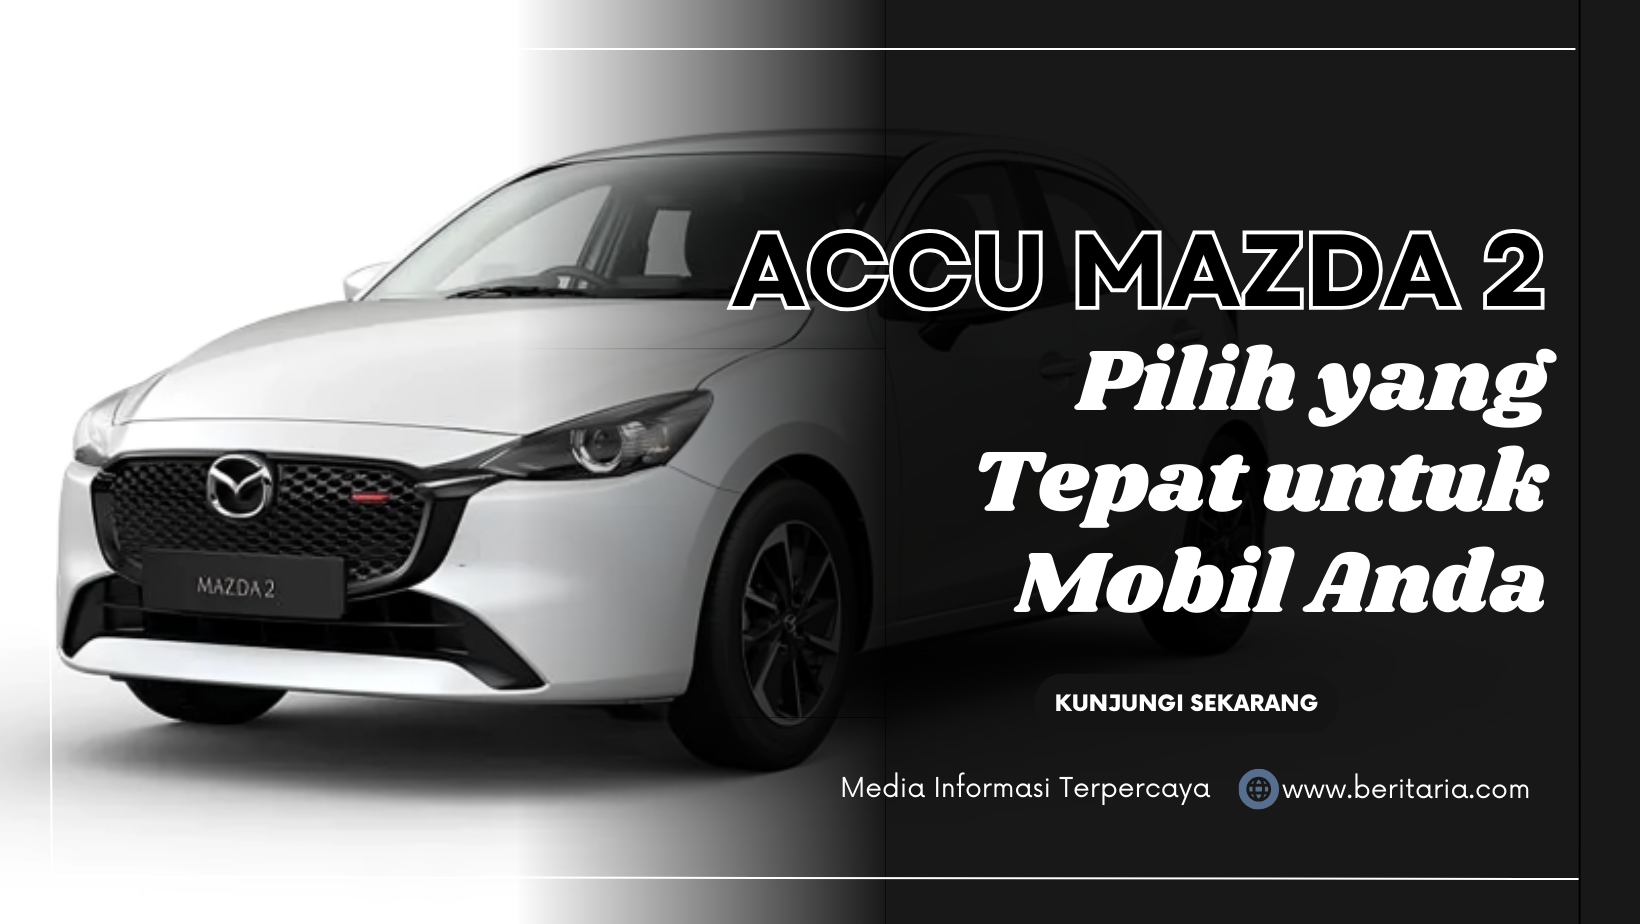 Beritaria.com | Accu Mazda 2: Pilih yang Tepat untuk Mobil Anda